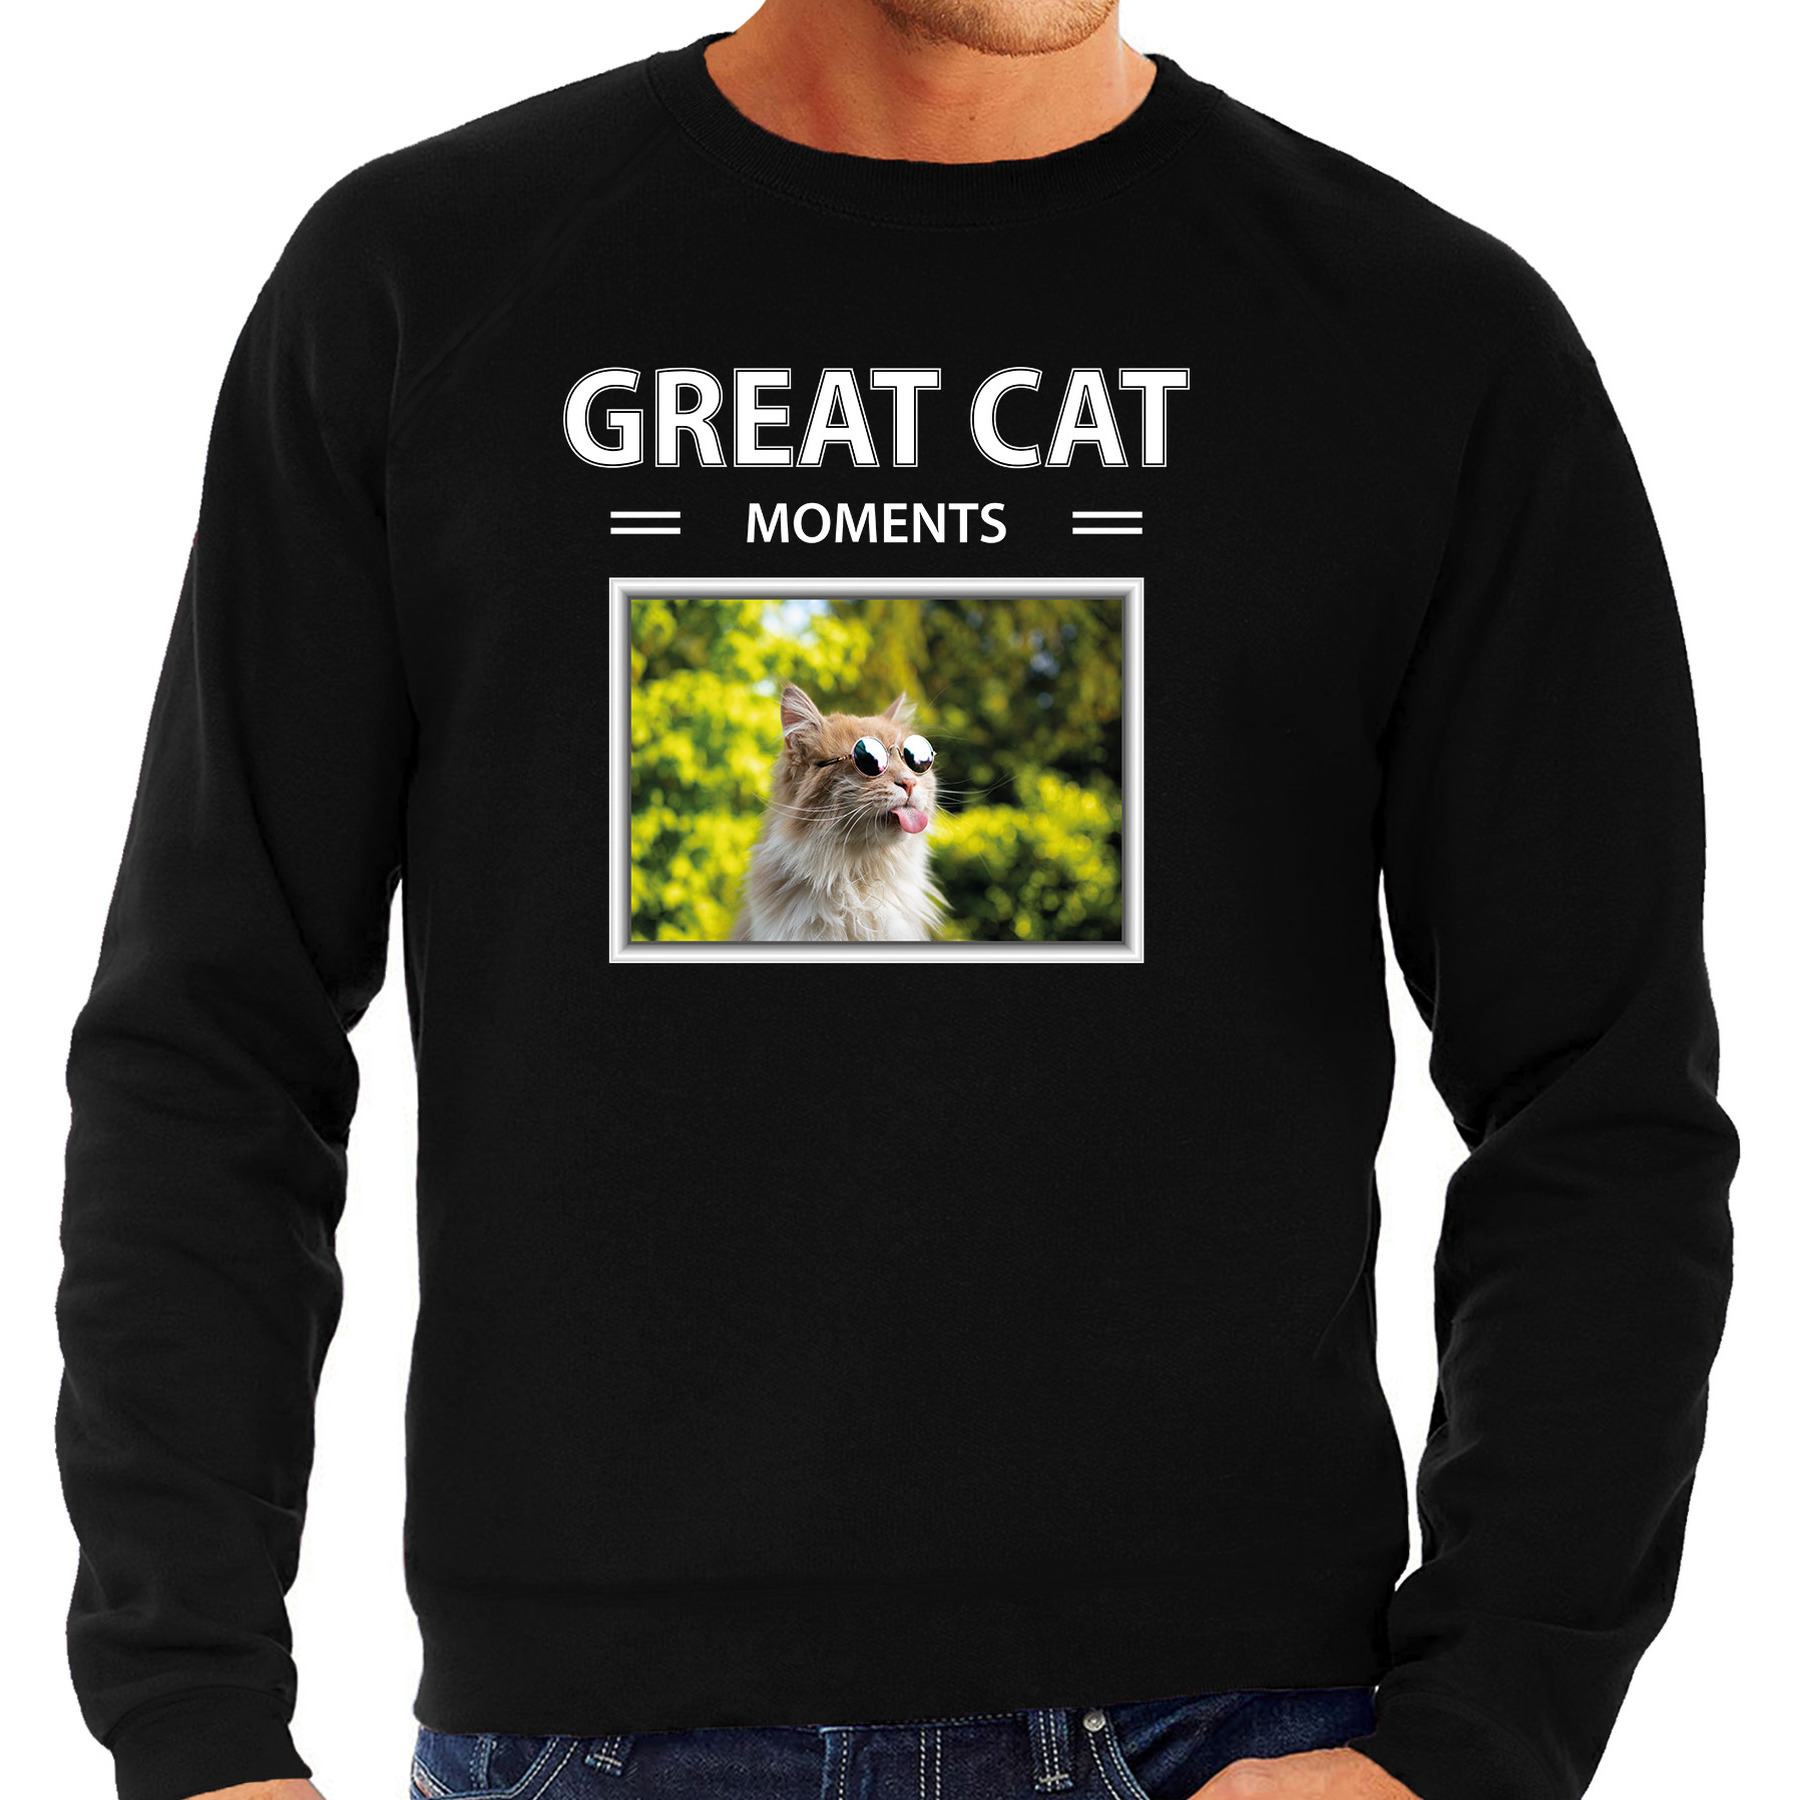 Rode katten trui / sweater met dieren foto great cat moments zwart voor heren